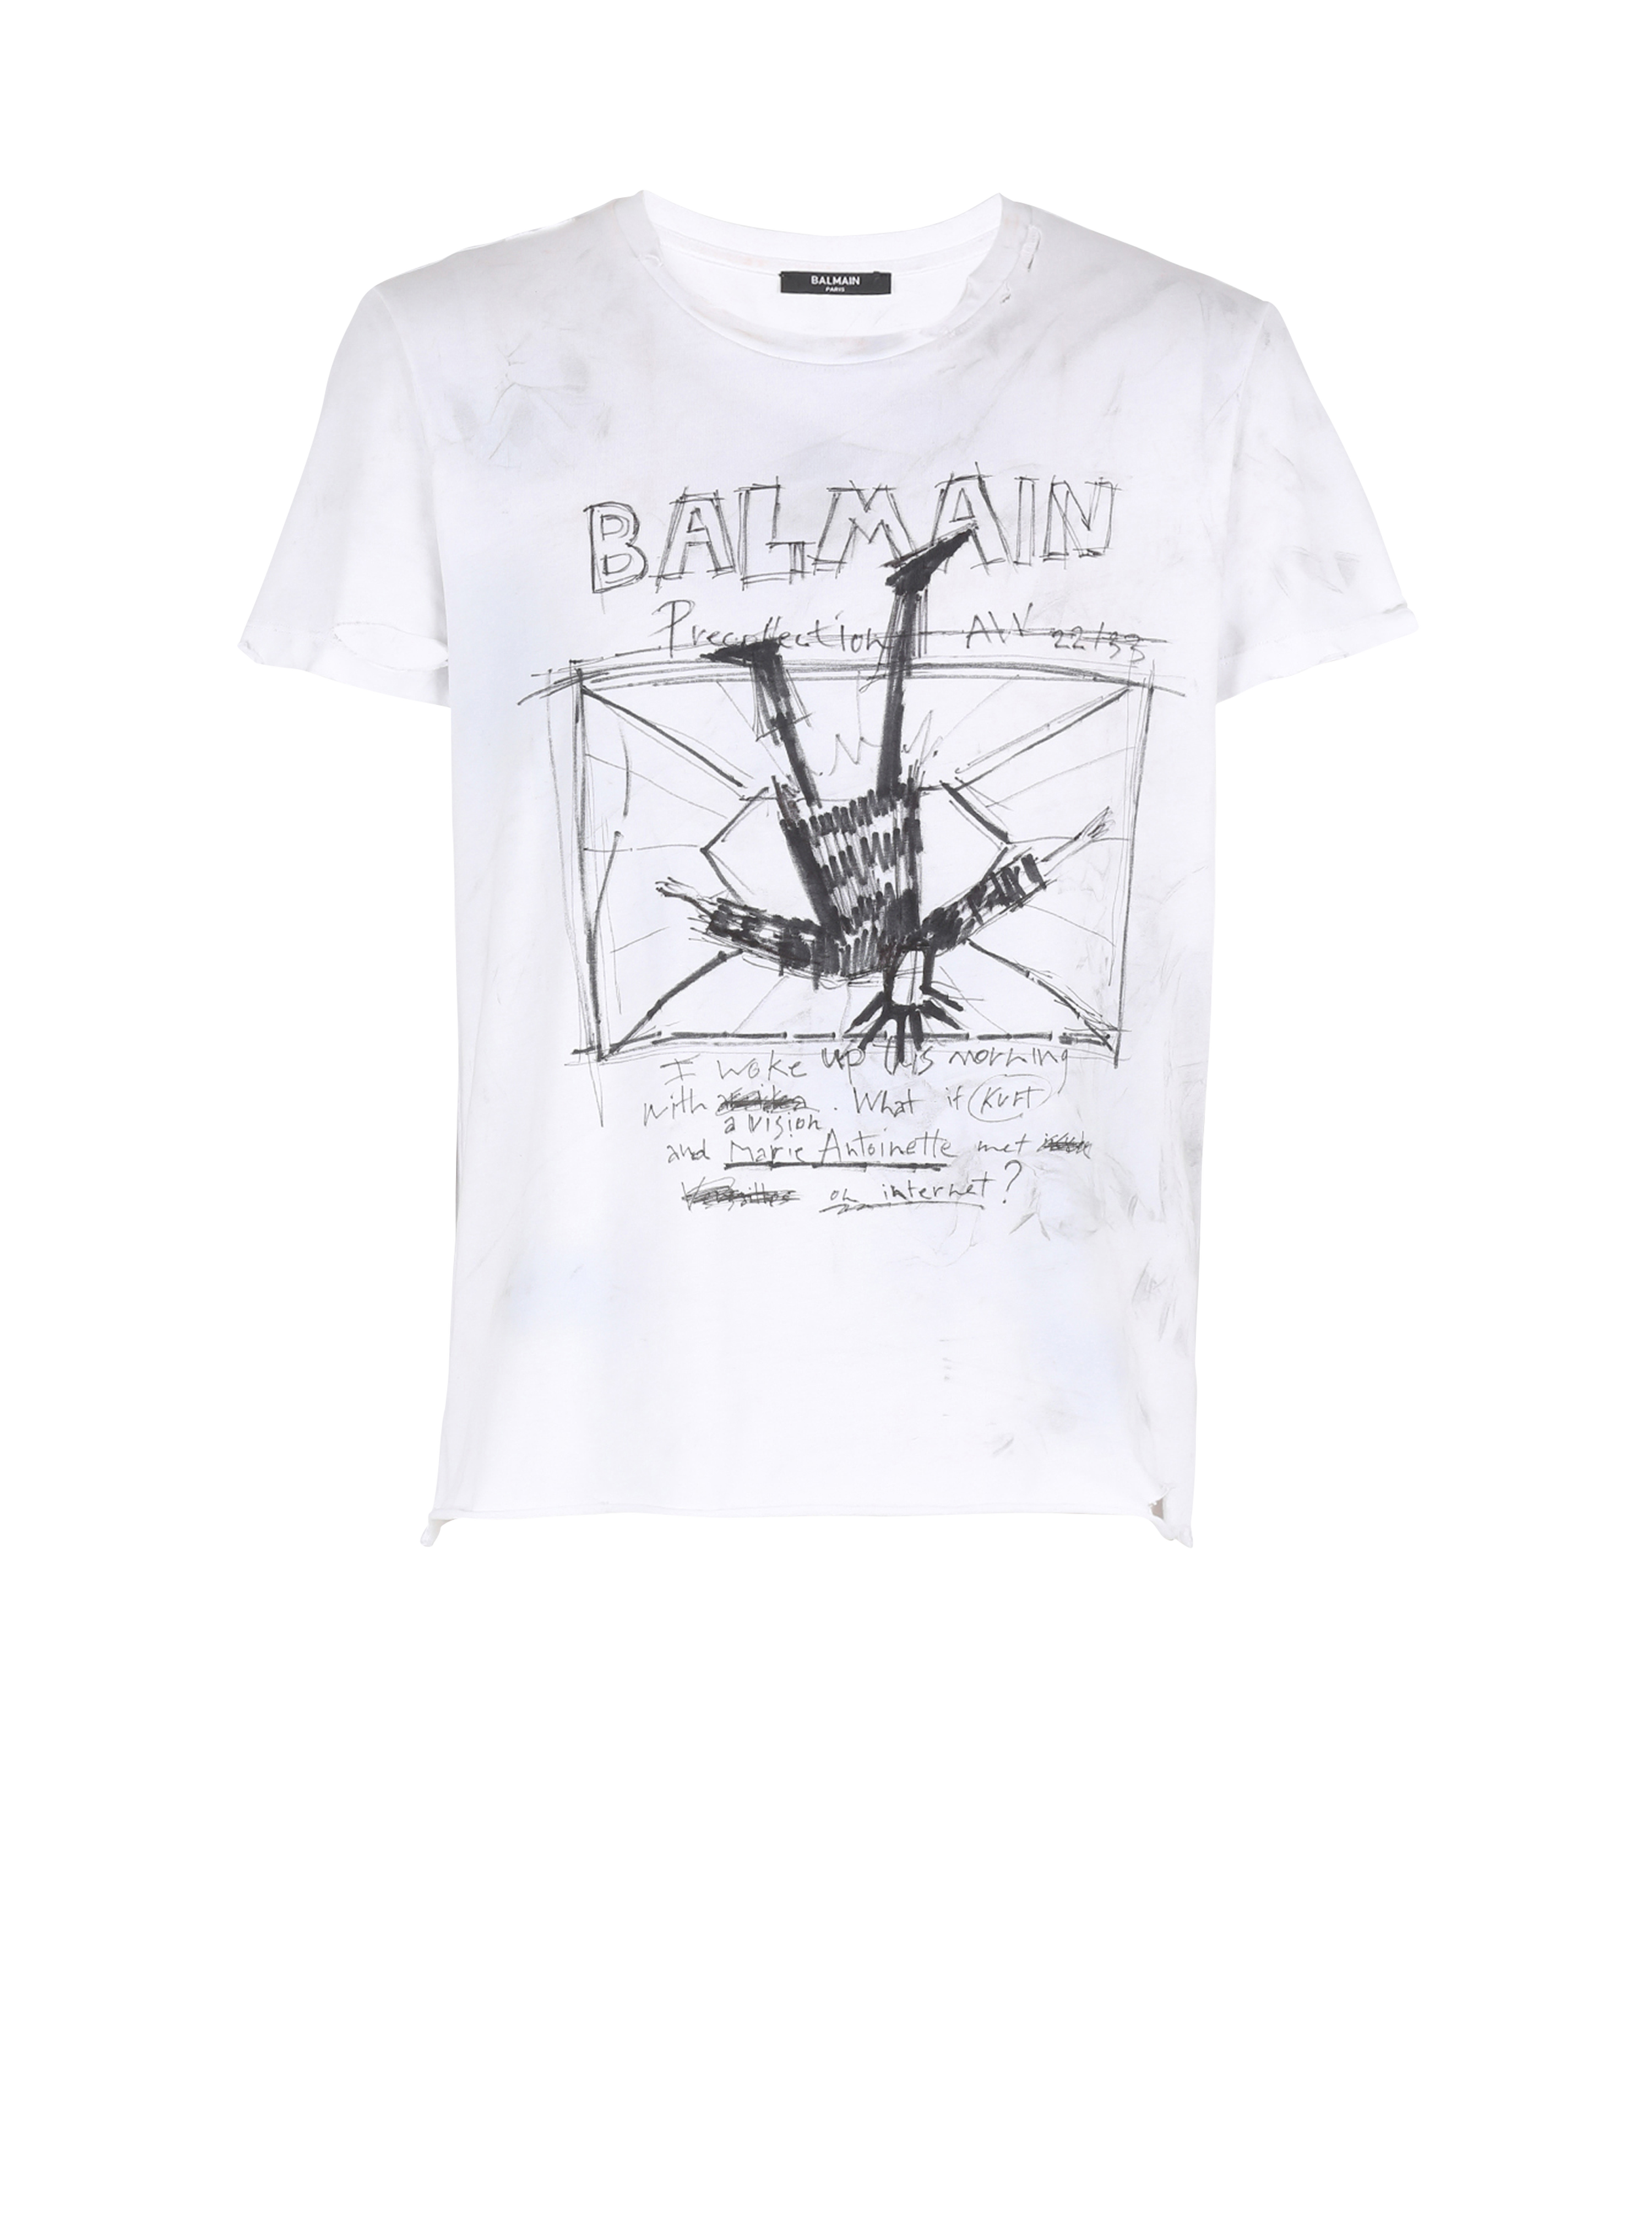 Unisexe - T-shirt en coton à motifs et logo Balmain imprimé, noir